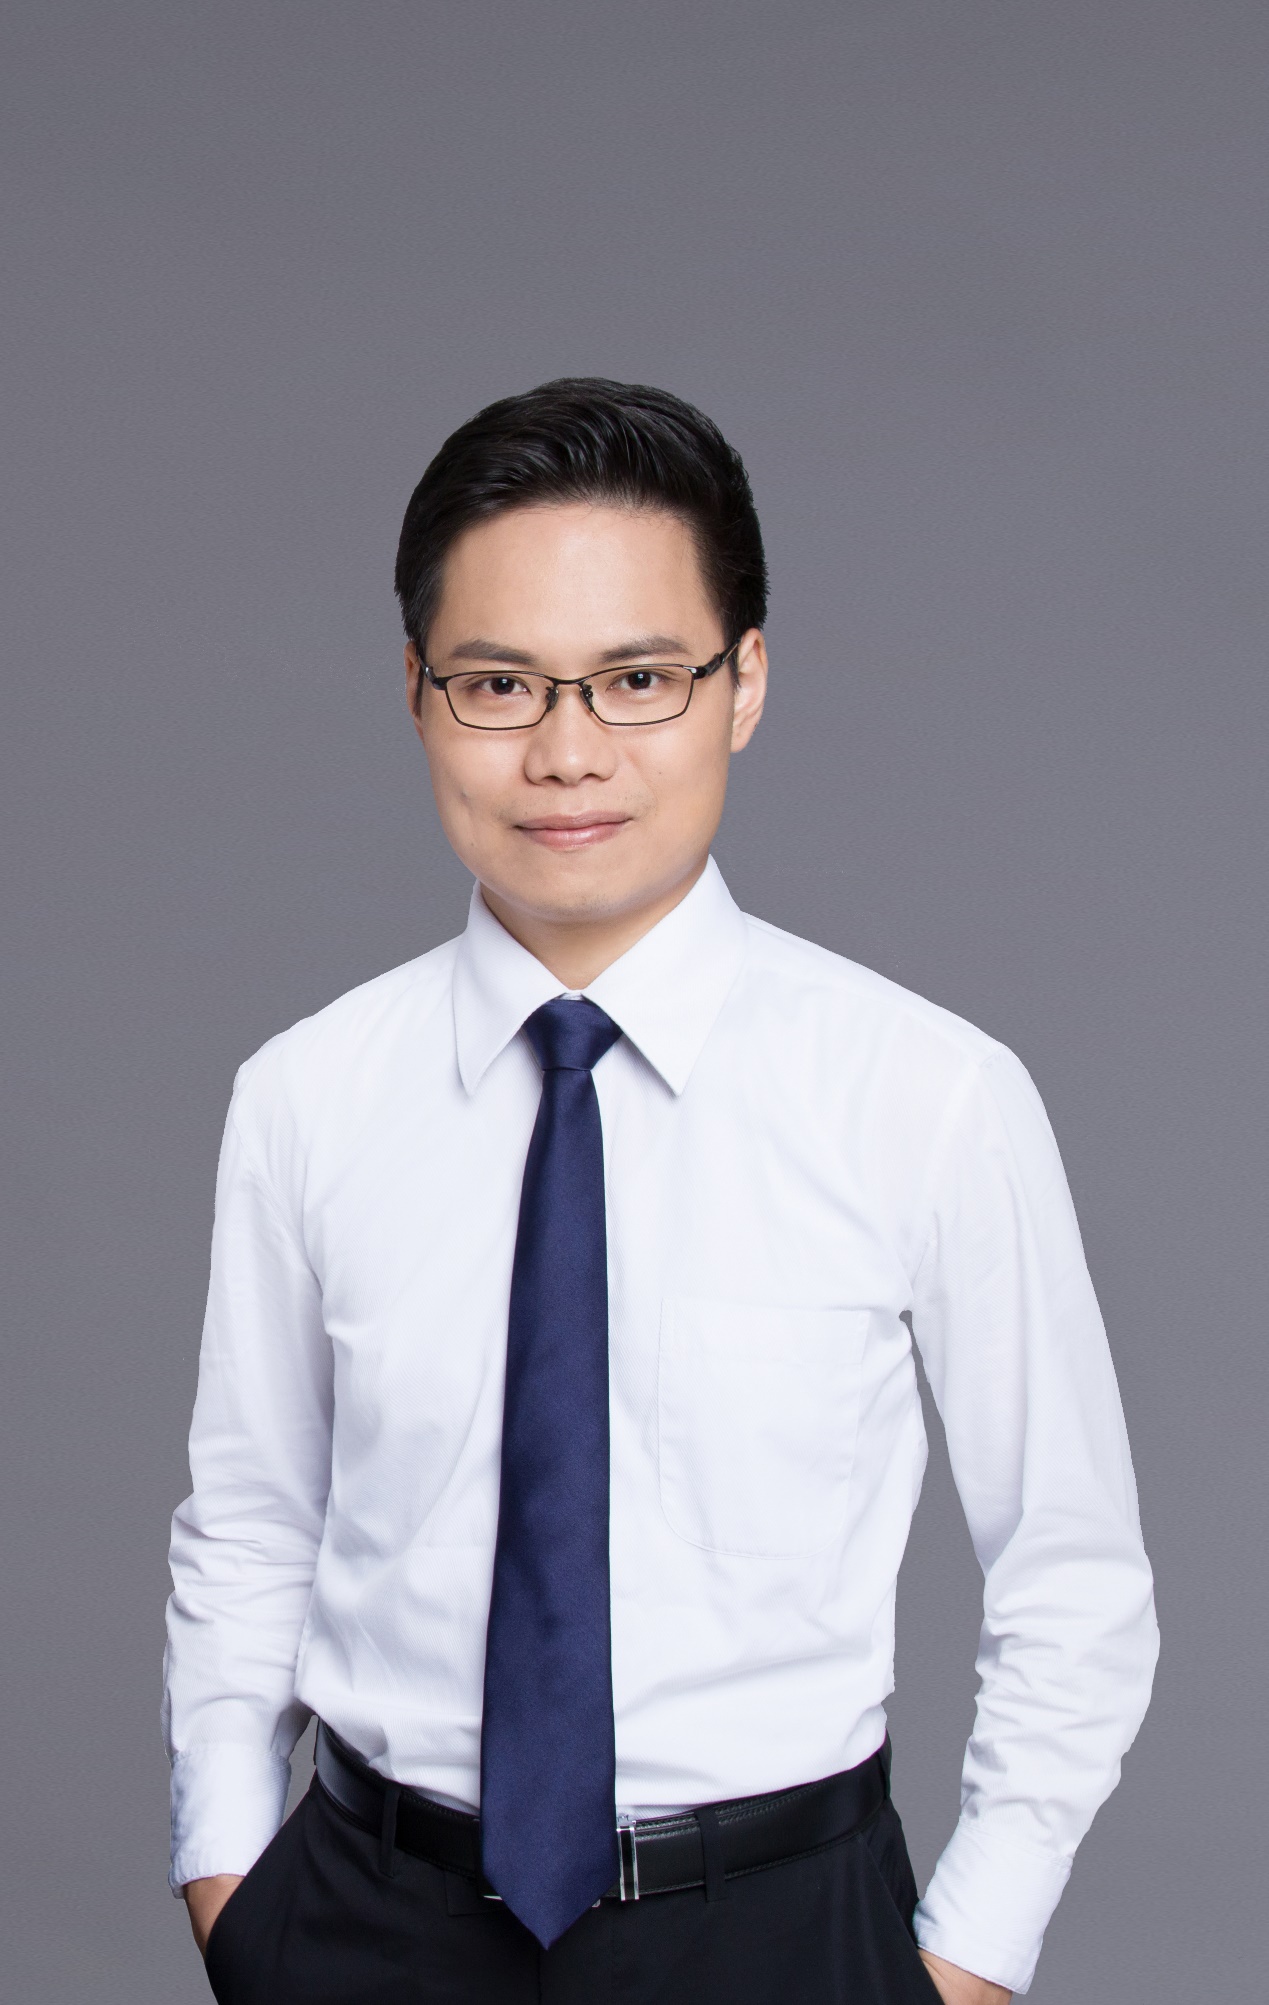 开源证券研究所所长助理、金融工程首席分析师魏建榕